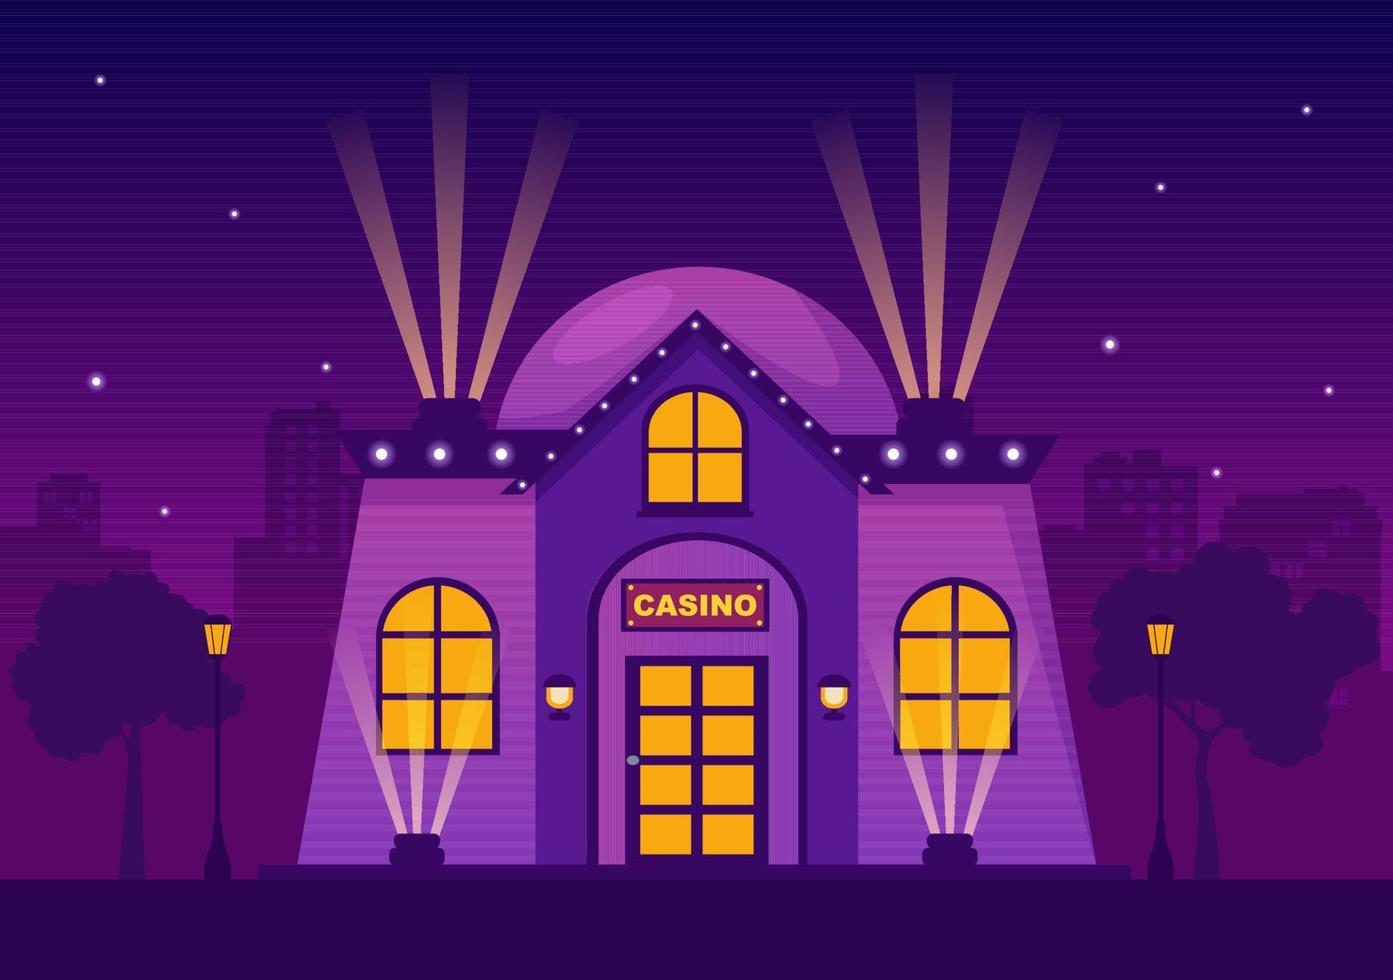 kasinobyggnad tecknad illustration med arkitektur, ljus och lila bakgrund för spelstil design vektor